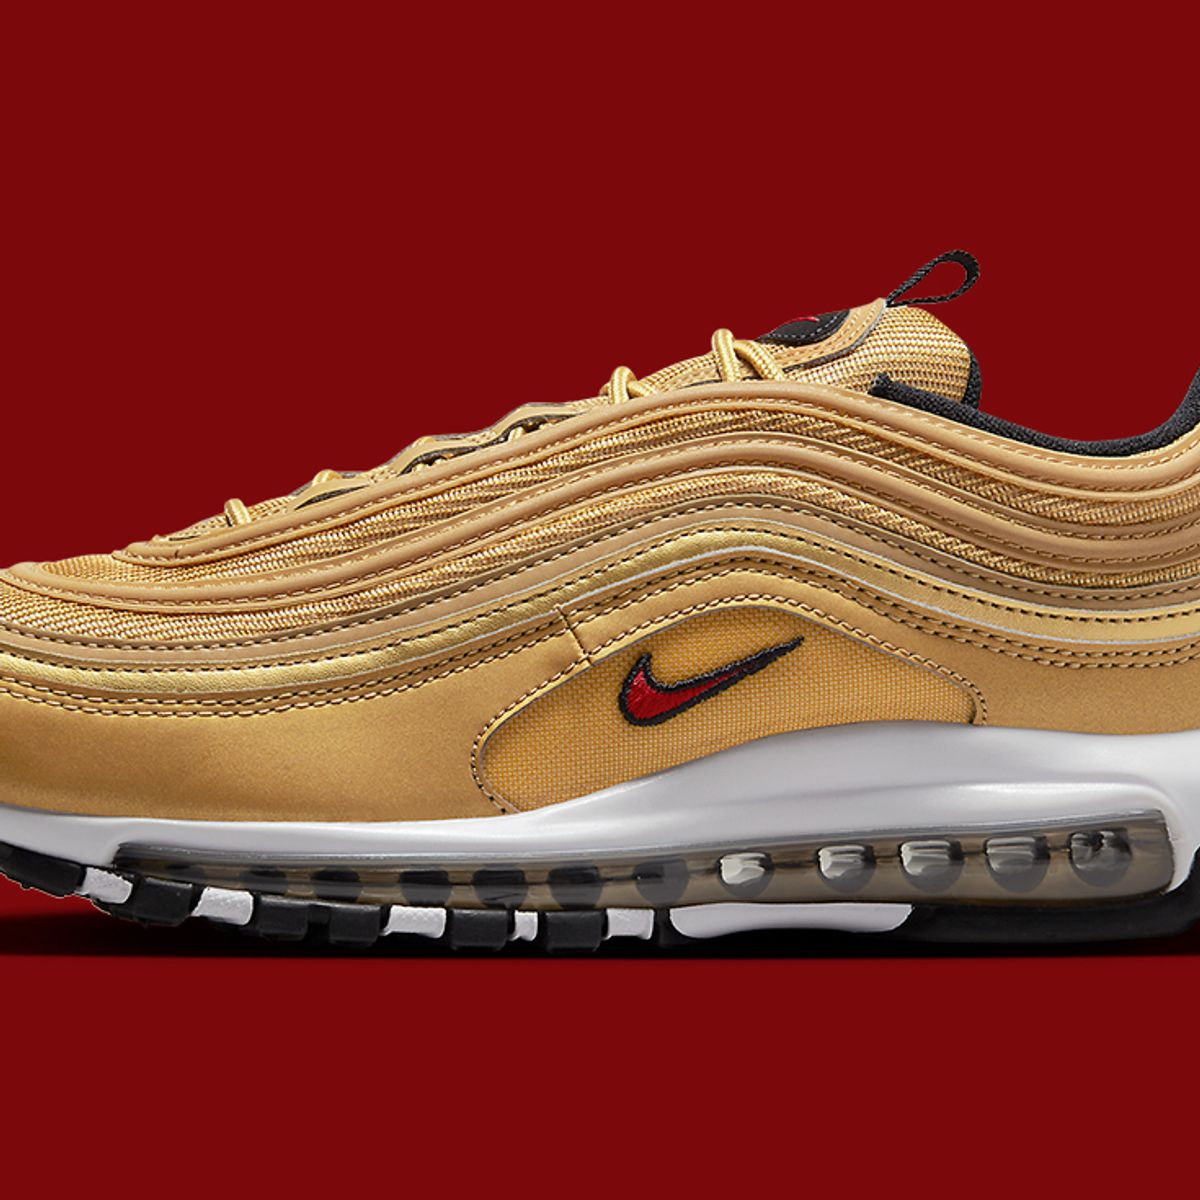 Where to Buy Nike Air 97 'Gold Bullet' - Sneaker Freaker